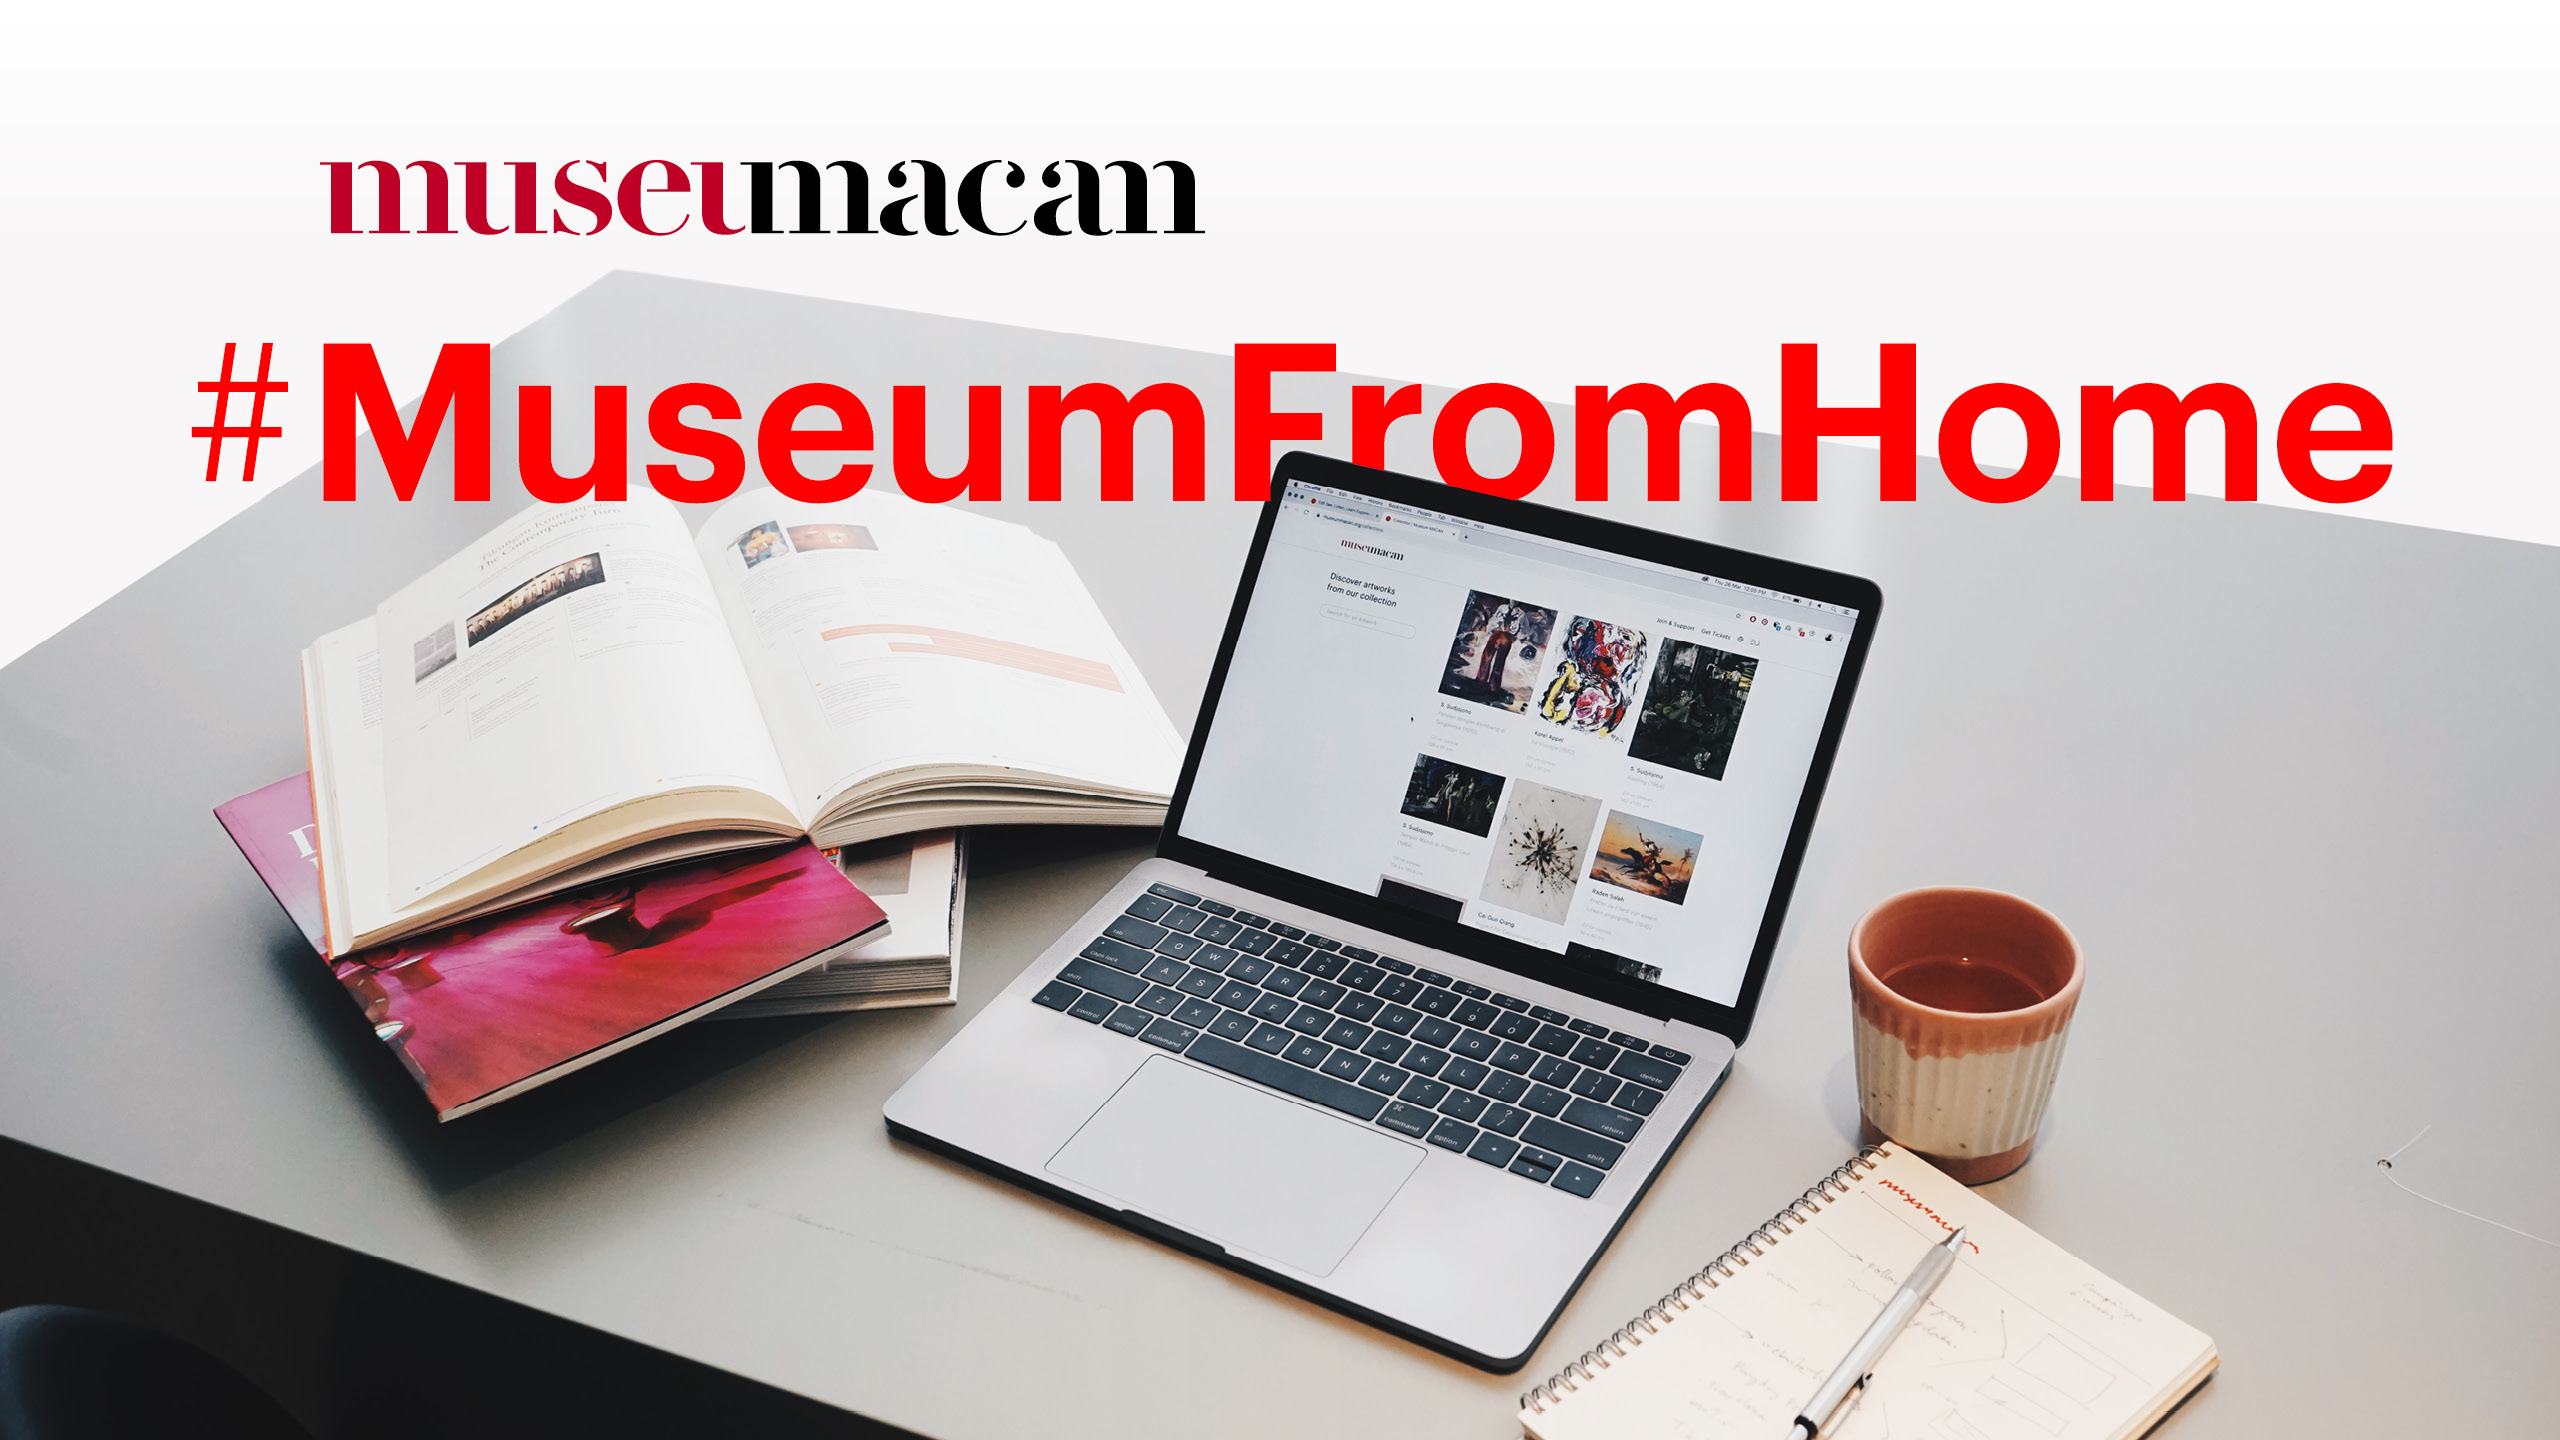 Mengenal gerakan #MuseumFromHome dari Museum MACAN, edukasi seni modern dan kontemporer berbasis platform online!